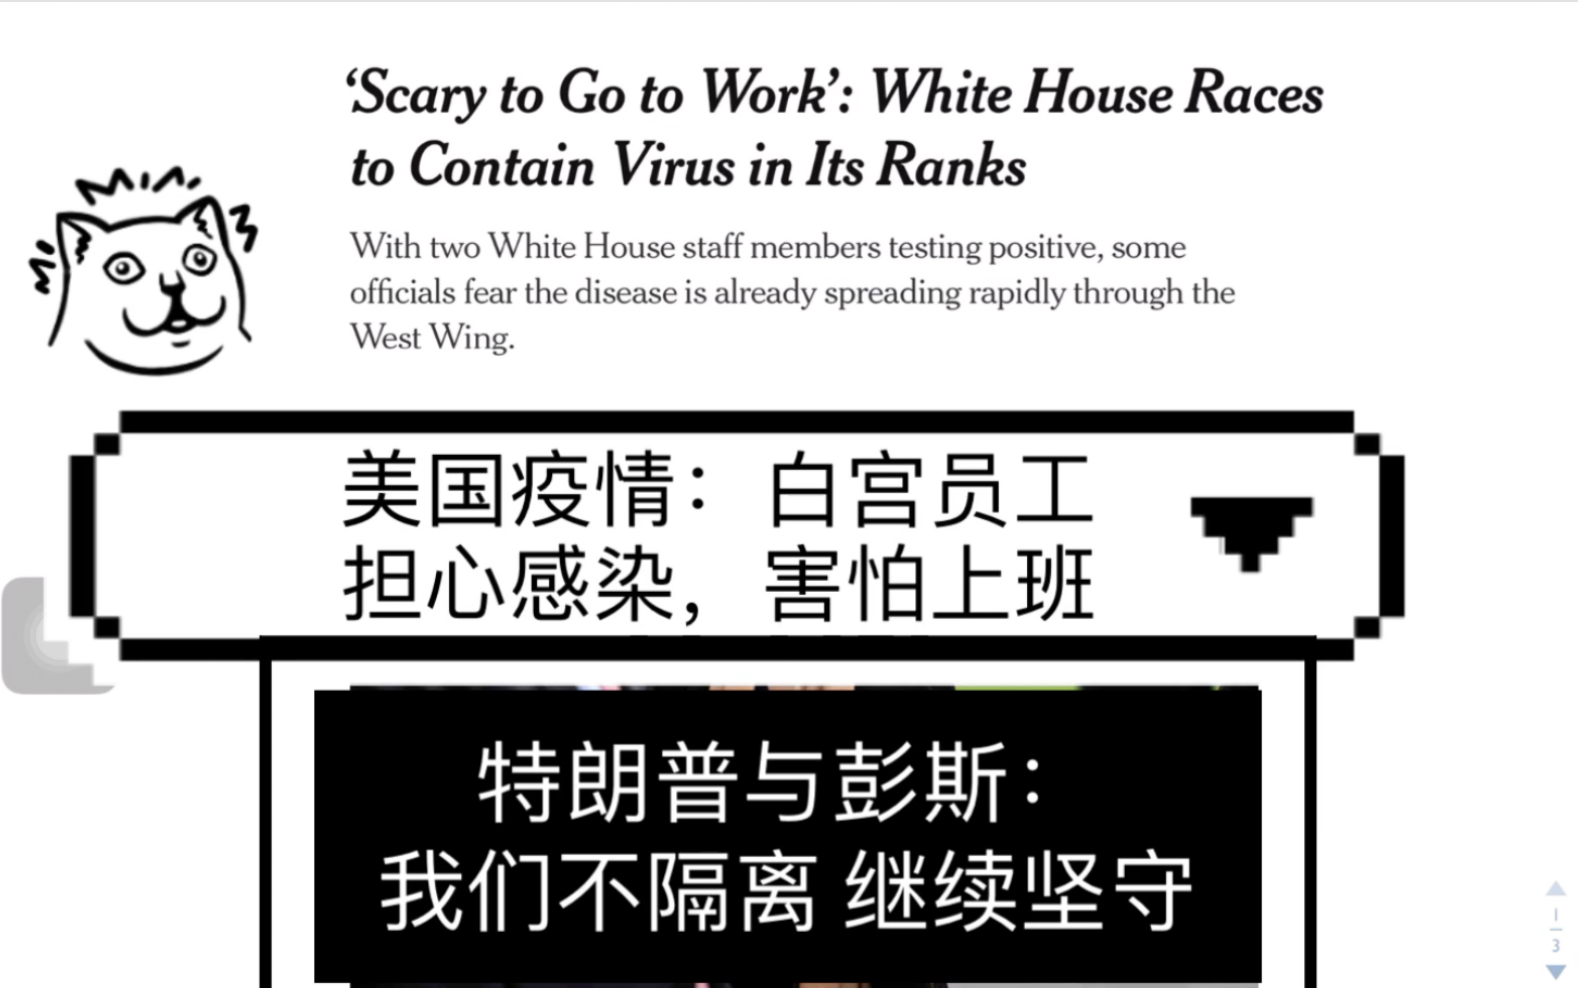 118期 英语报刊精读 美国疫情：白宫员工担心感染，害怕上班 但特朗普与彭斯：不隔离 继续坚守 纽约时报 New York Times